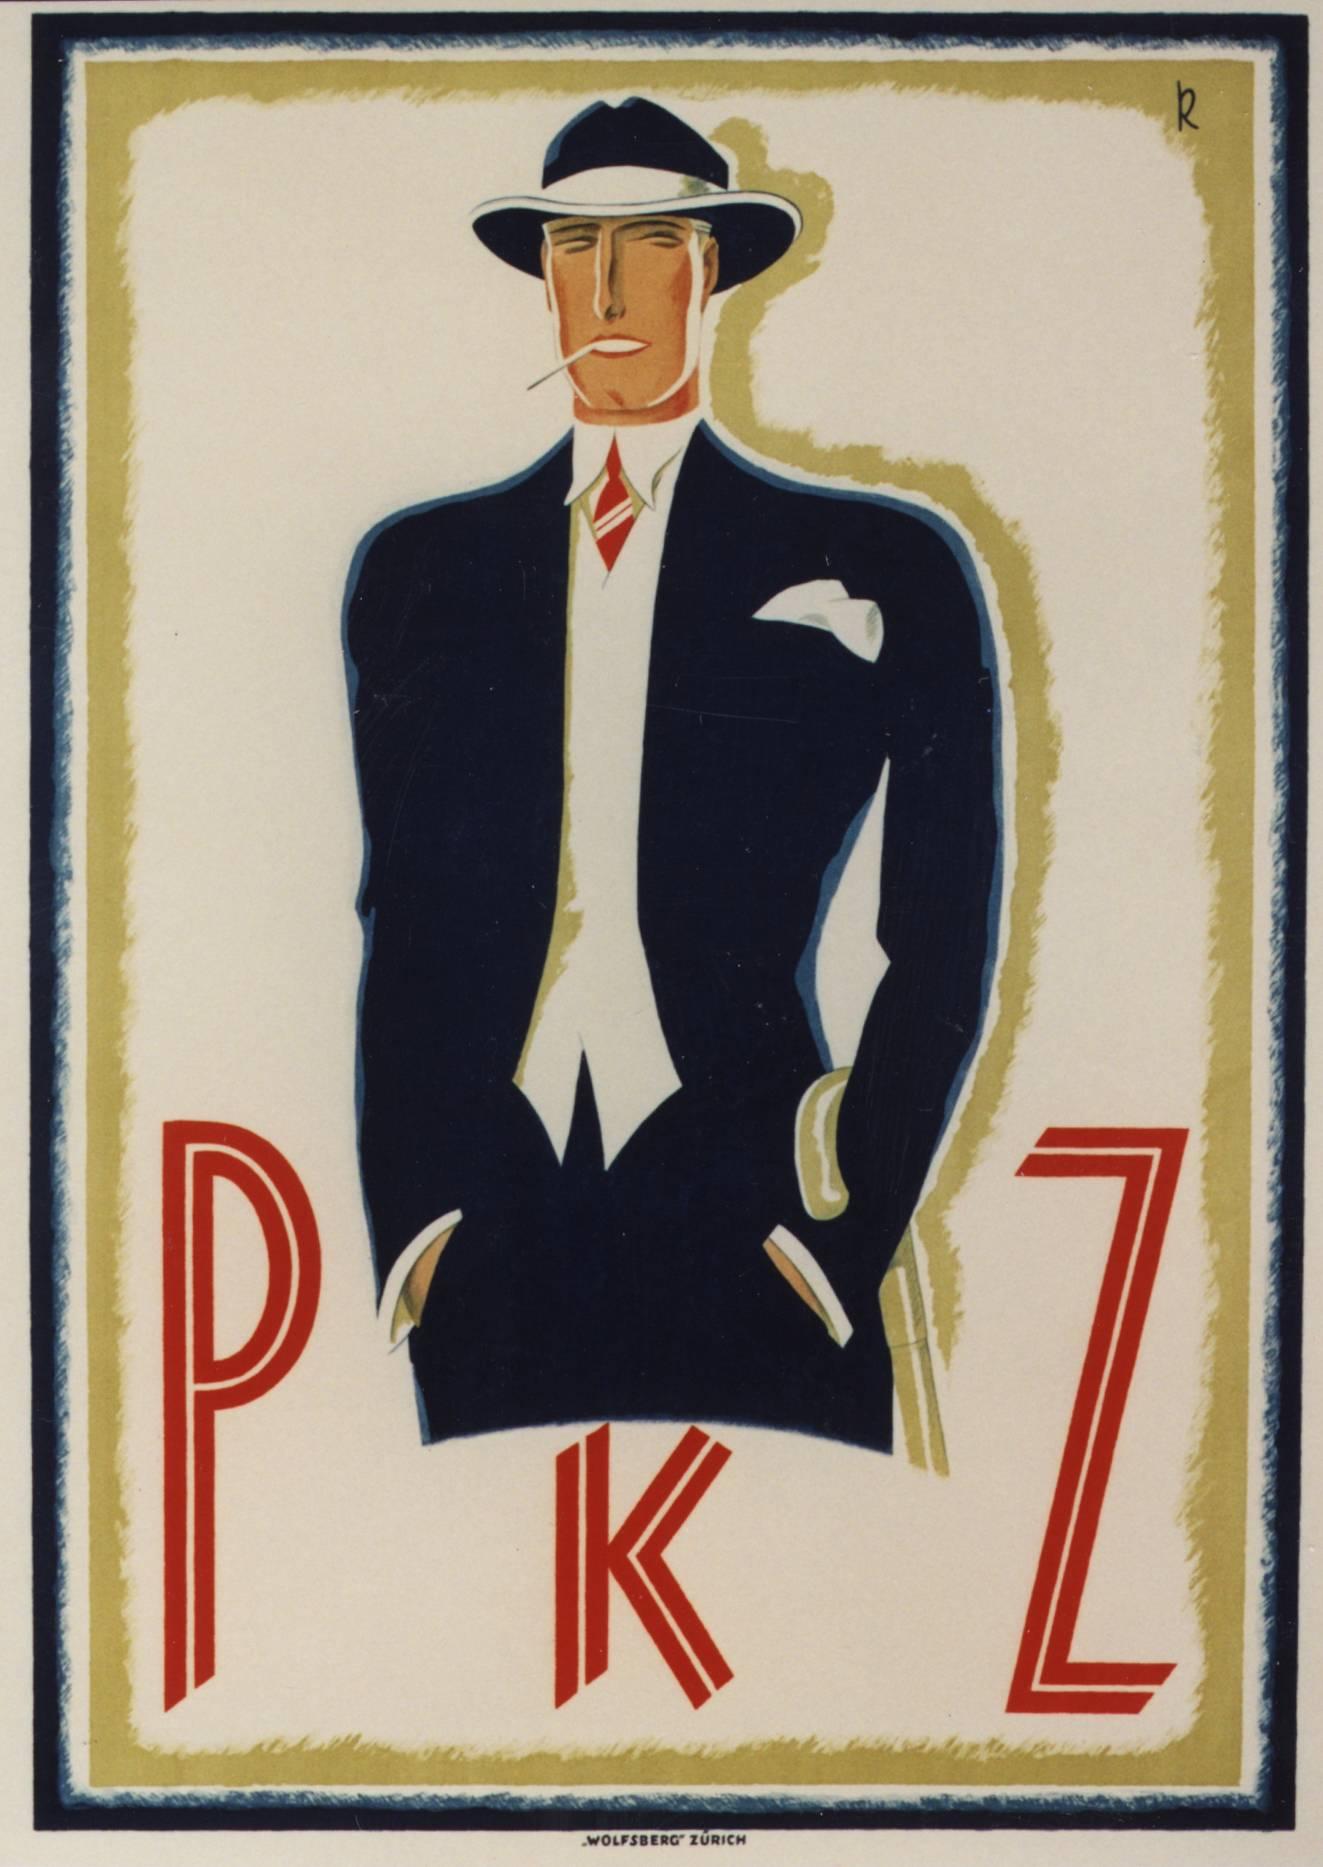 PKZ [Man in Blue Suit].